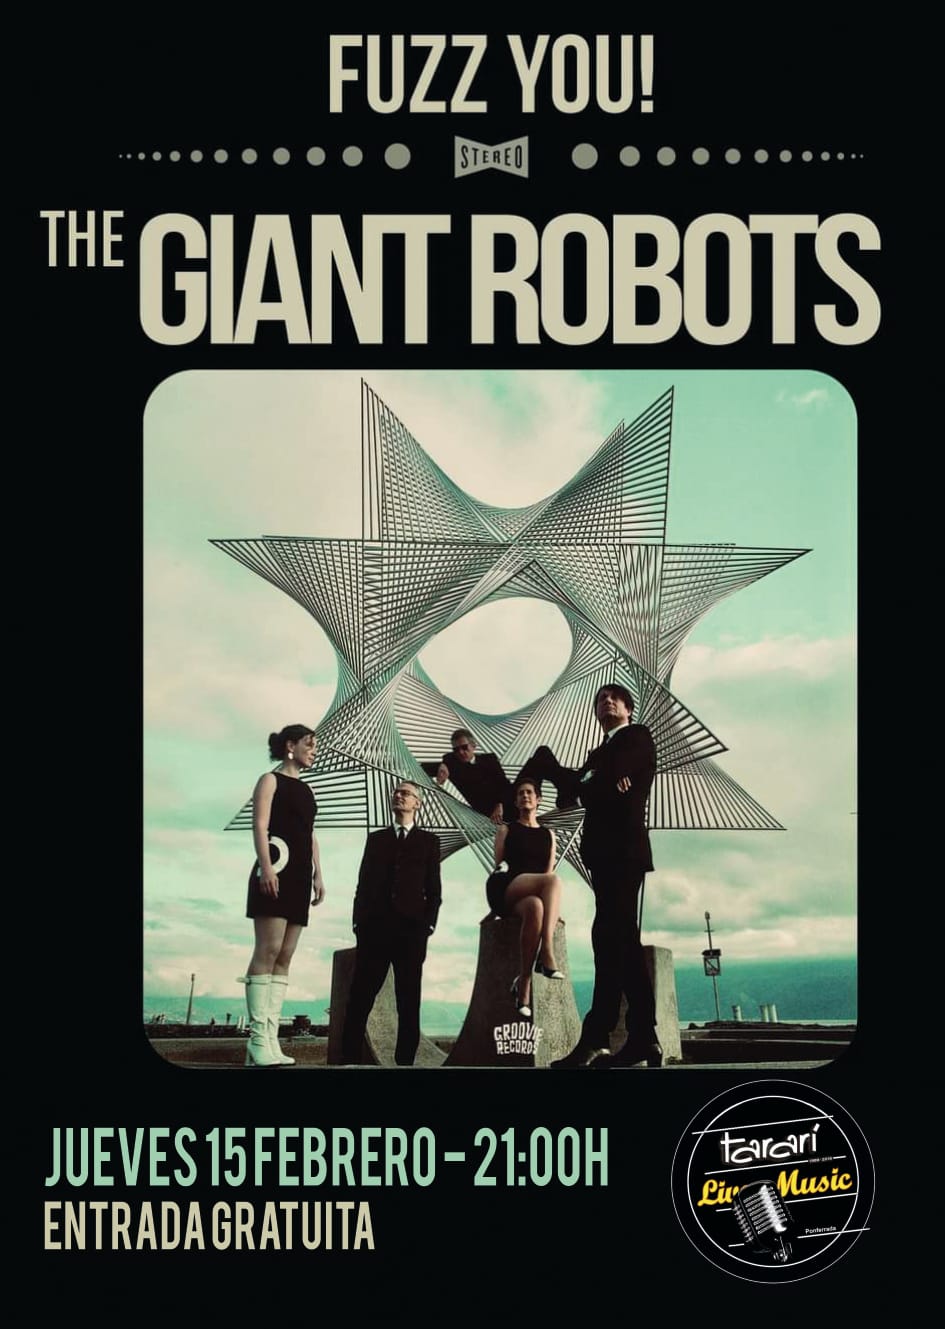 La banda suiza The Giant Robots trae a El Tararí, el mejor Rock & Roll con esencias de los sesenta 2